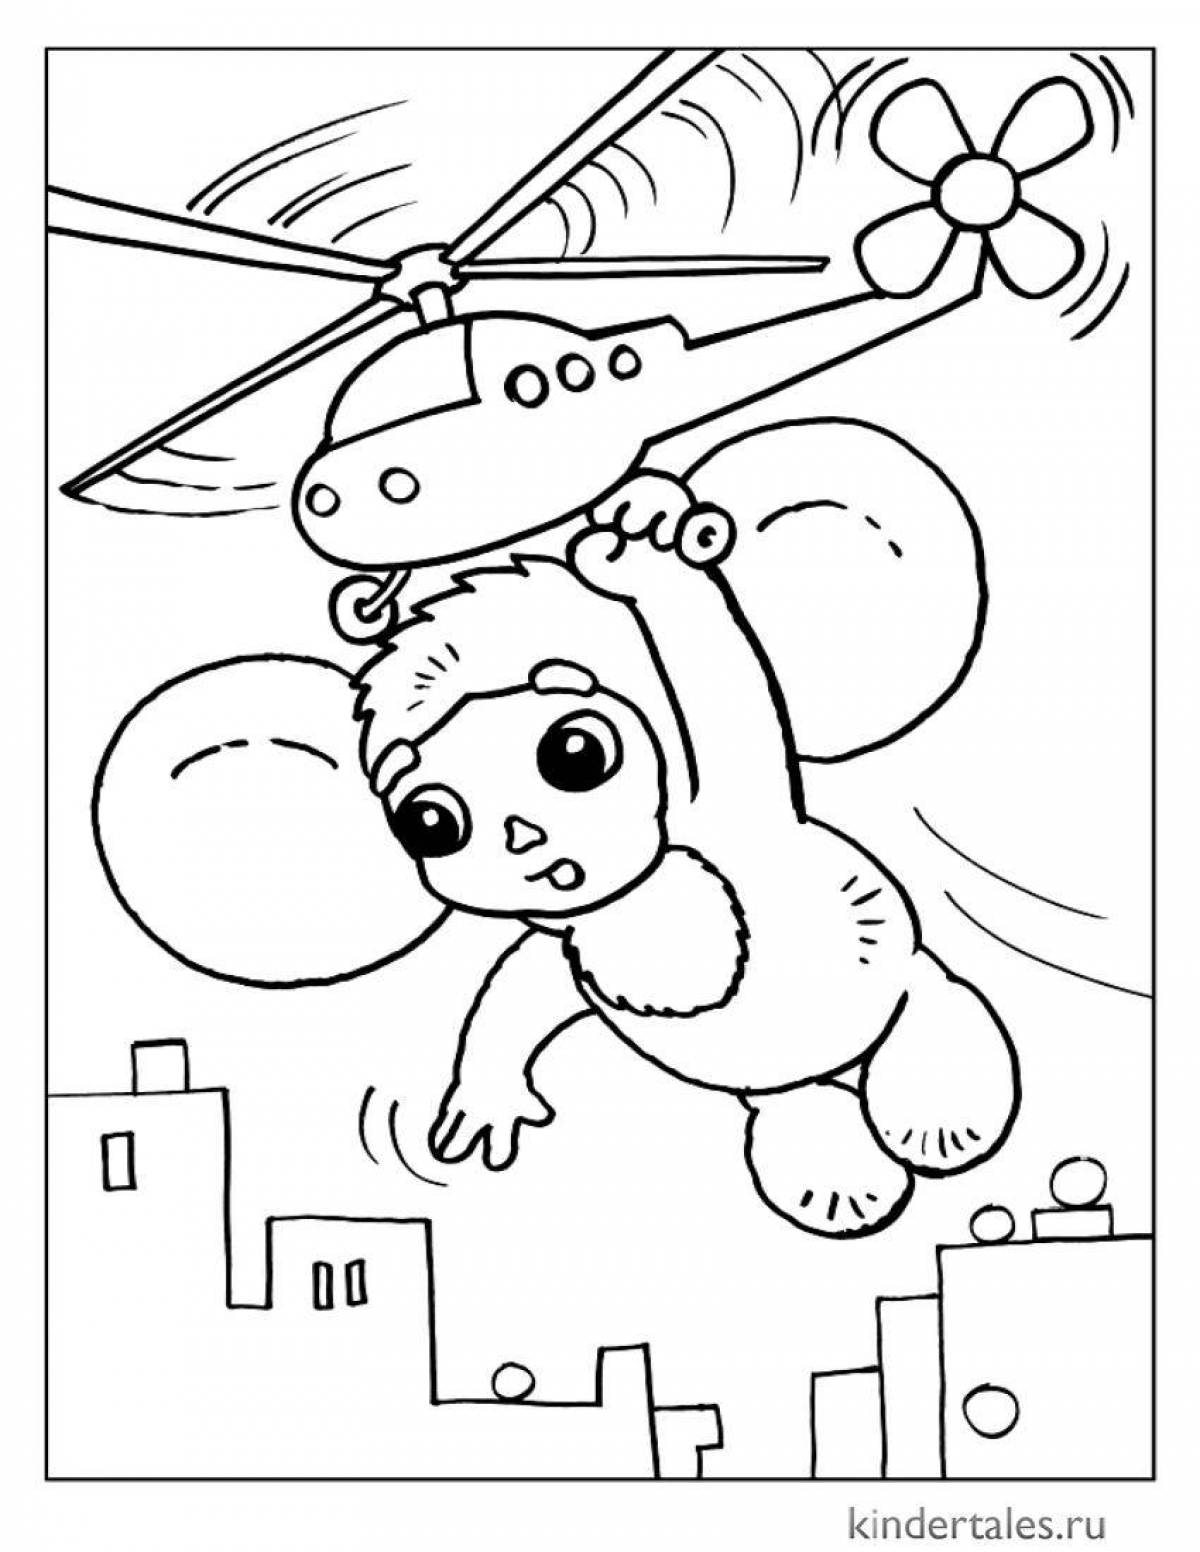 Cheburashka for children 6 7 years old #5